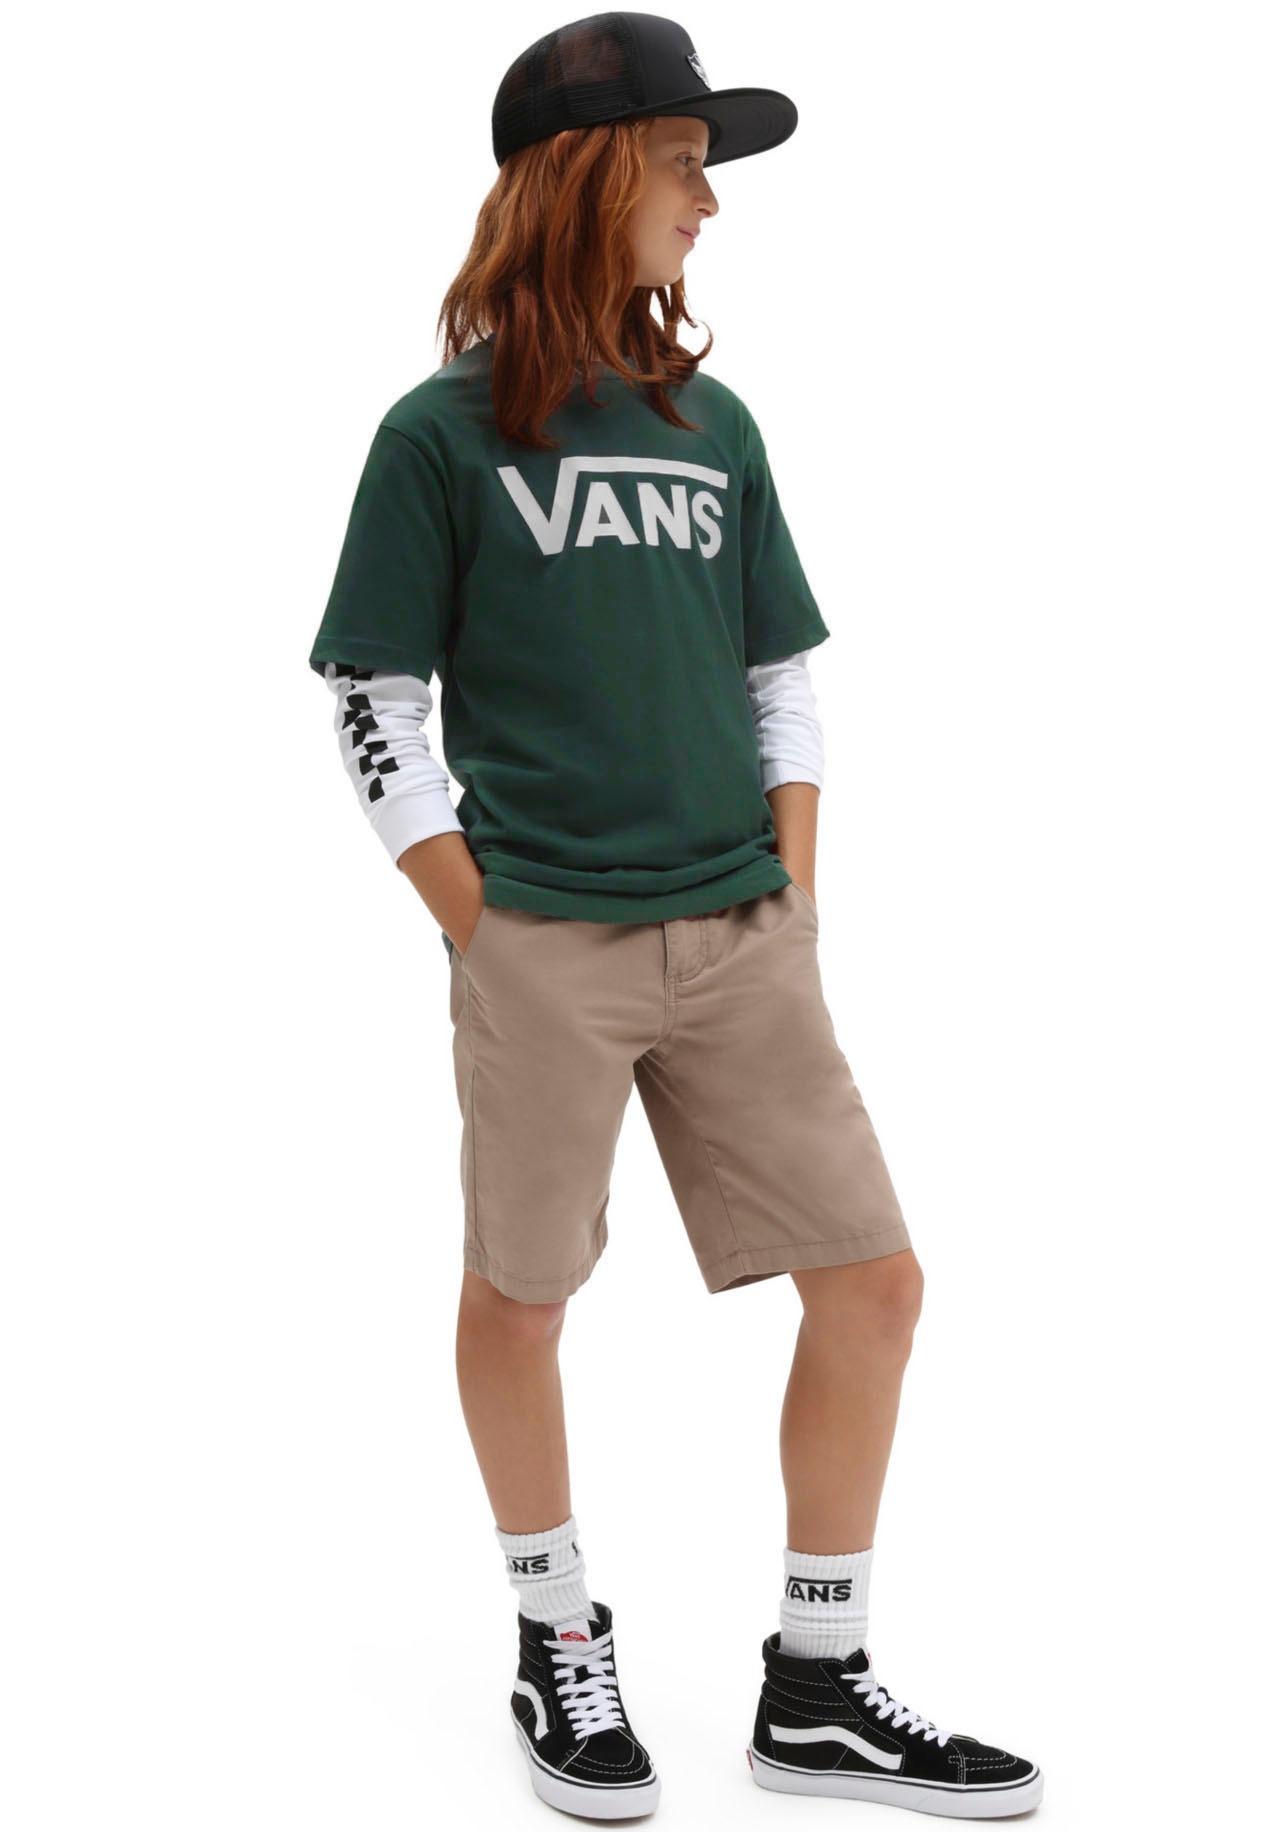 Vans T-Shirt »für Kinder«